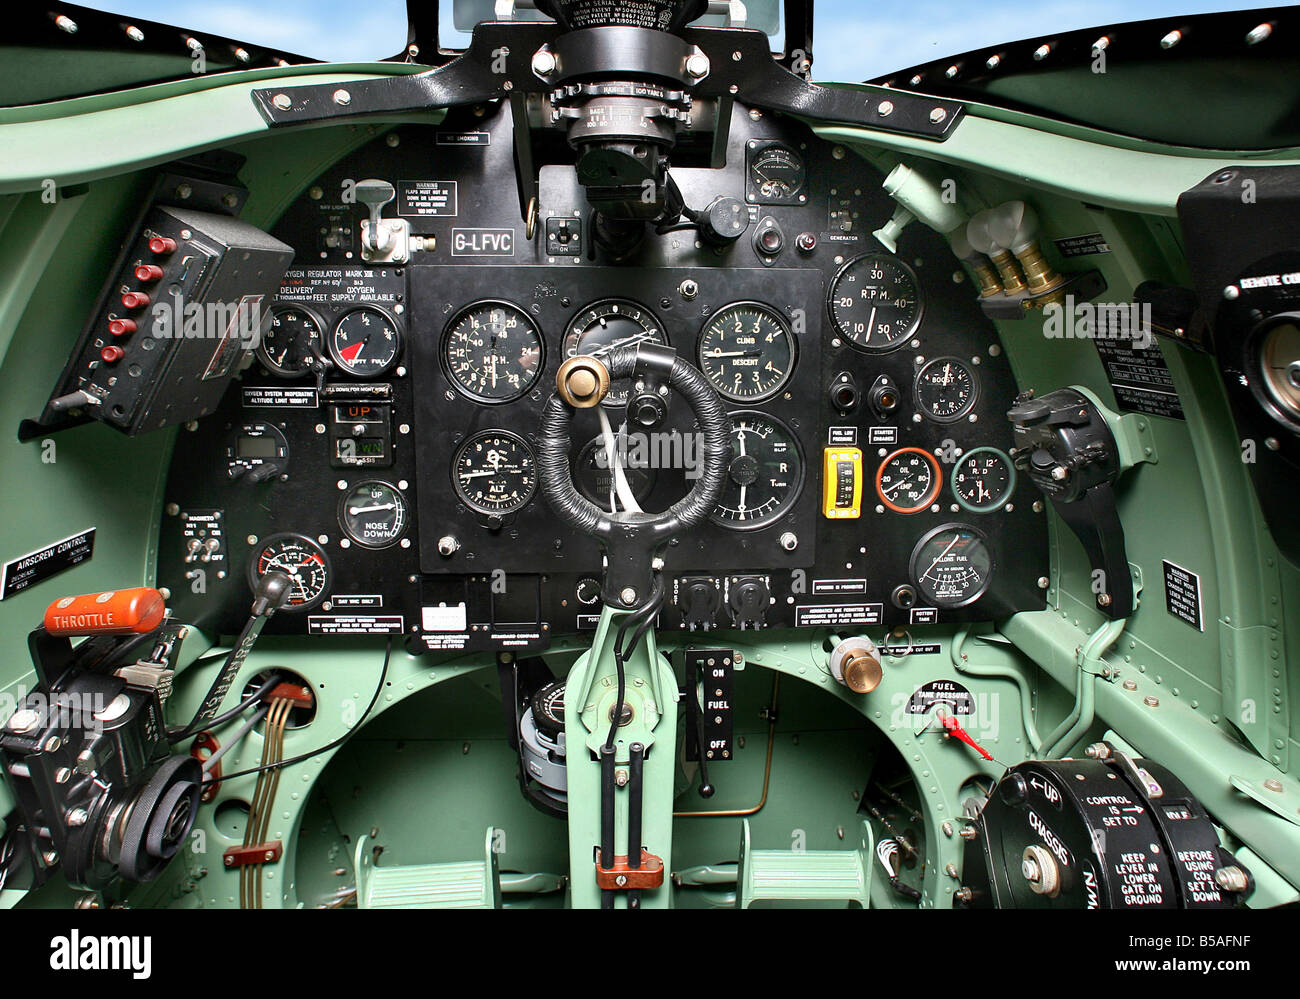 Inside A Spitfire Cockpit